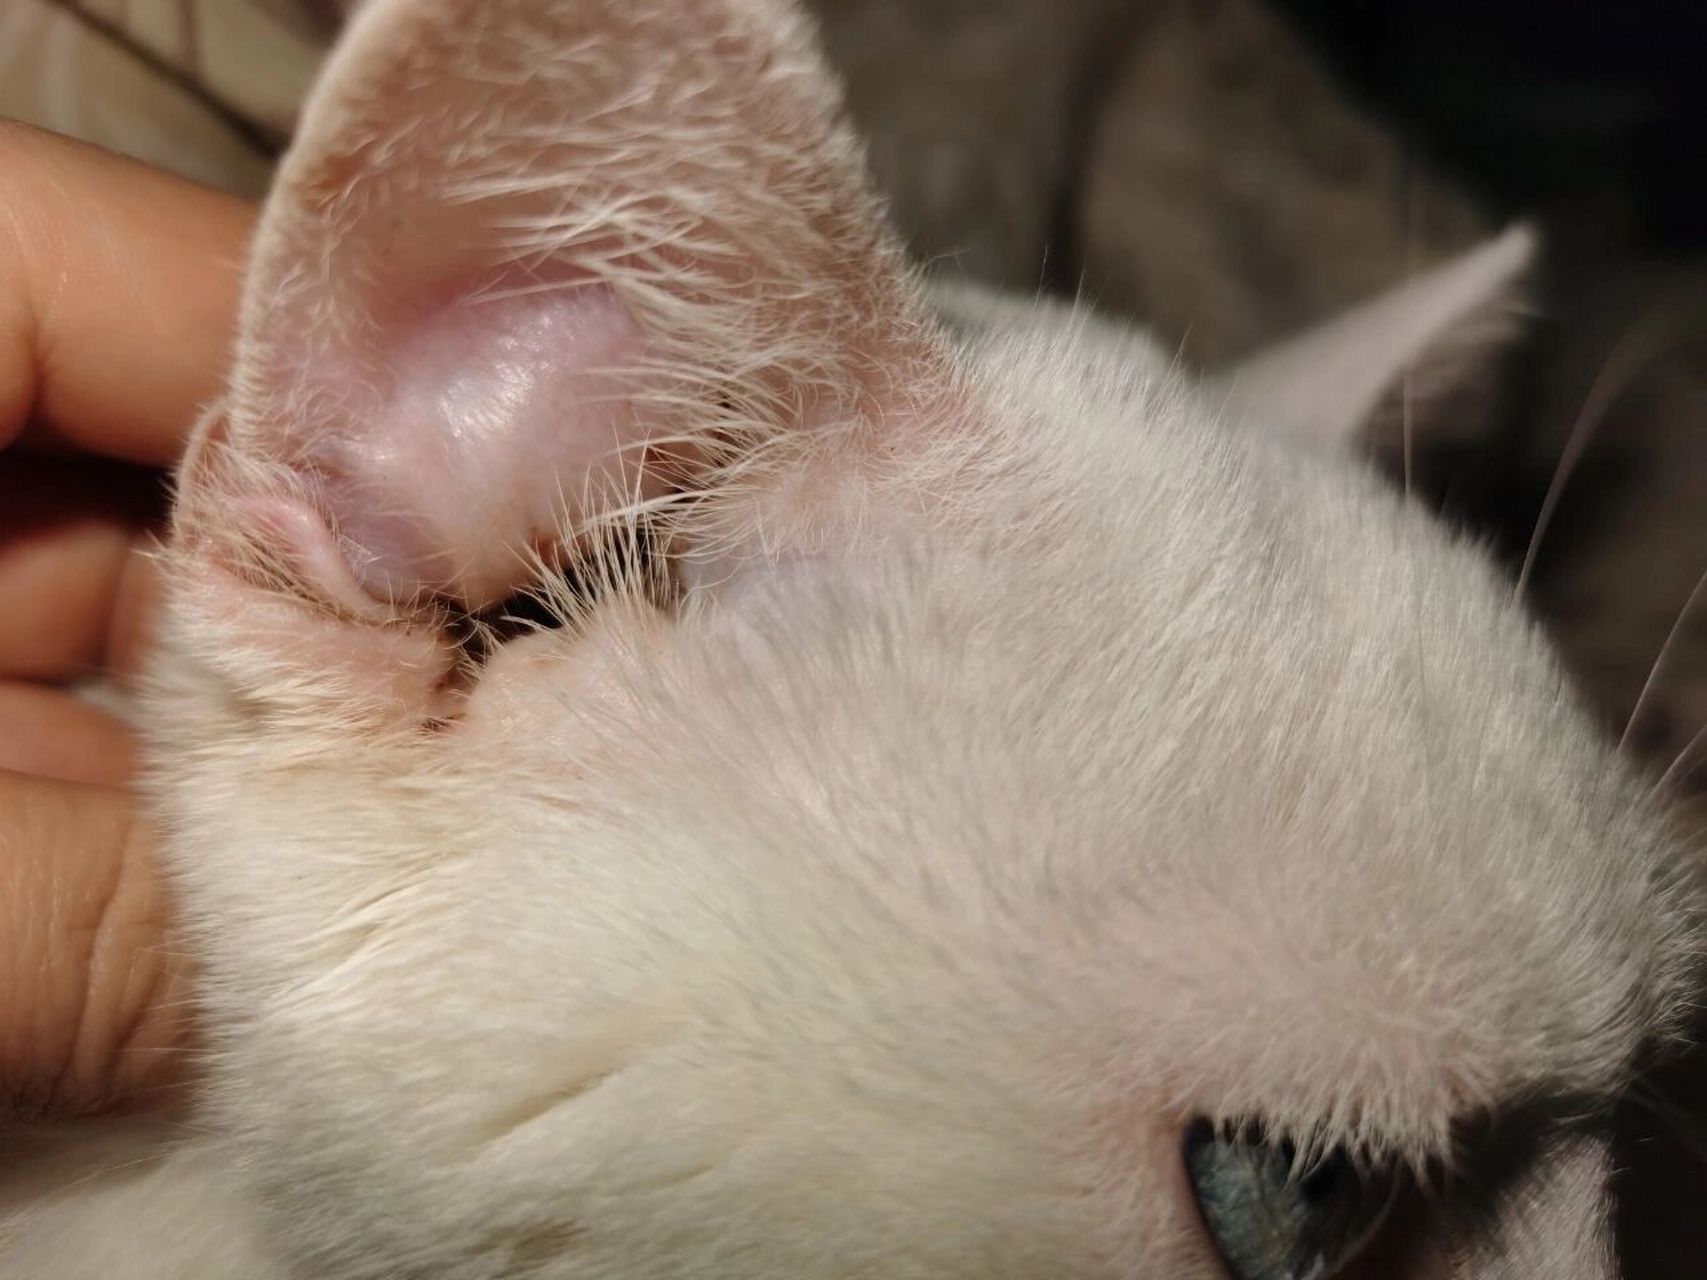 猫咪耳血肿,不做手术,慢慢好了 2021年12月25号,发现猫咪的耳朵肿了